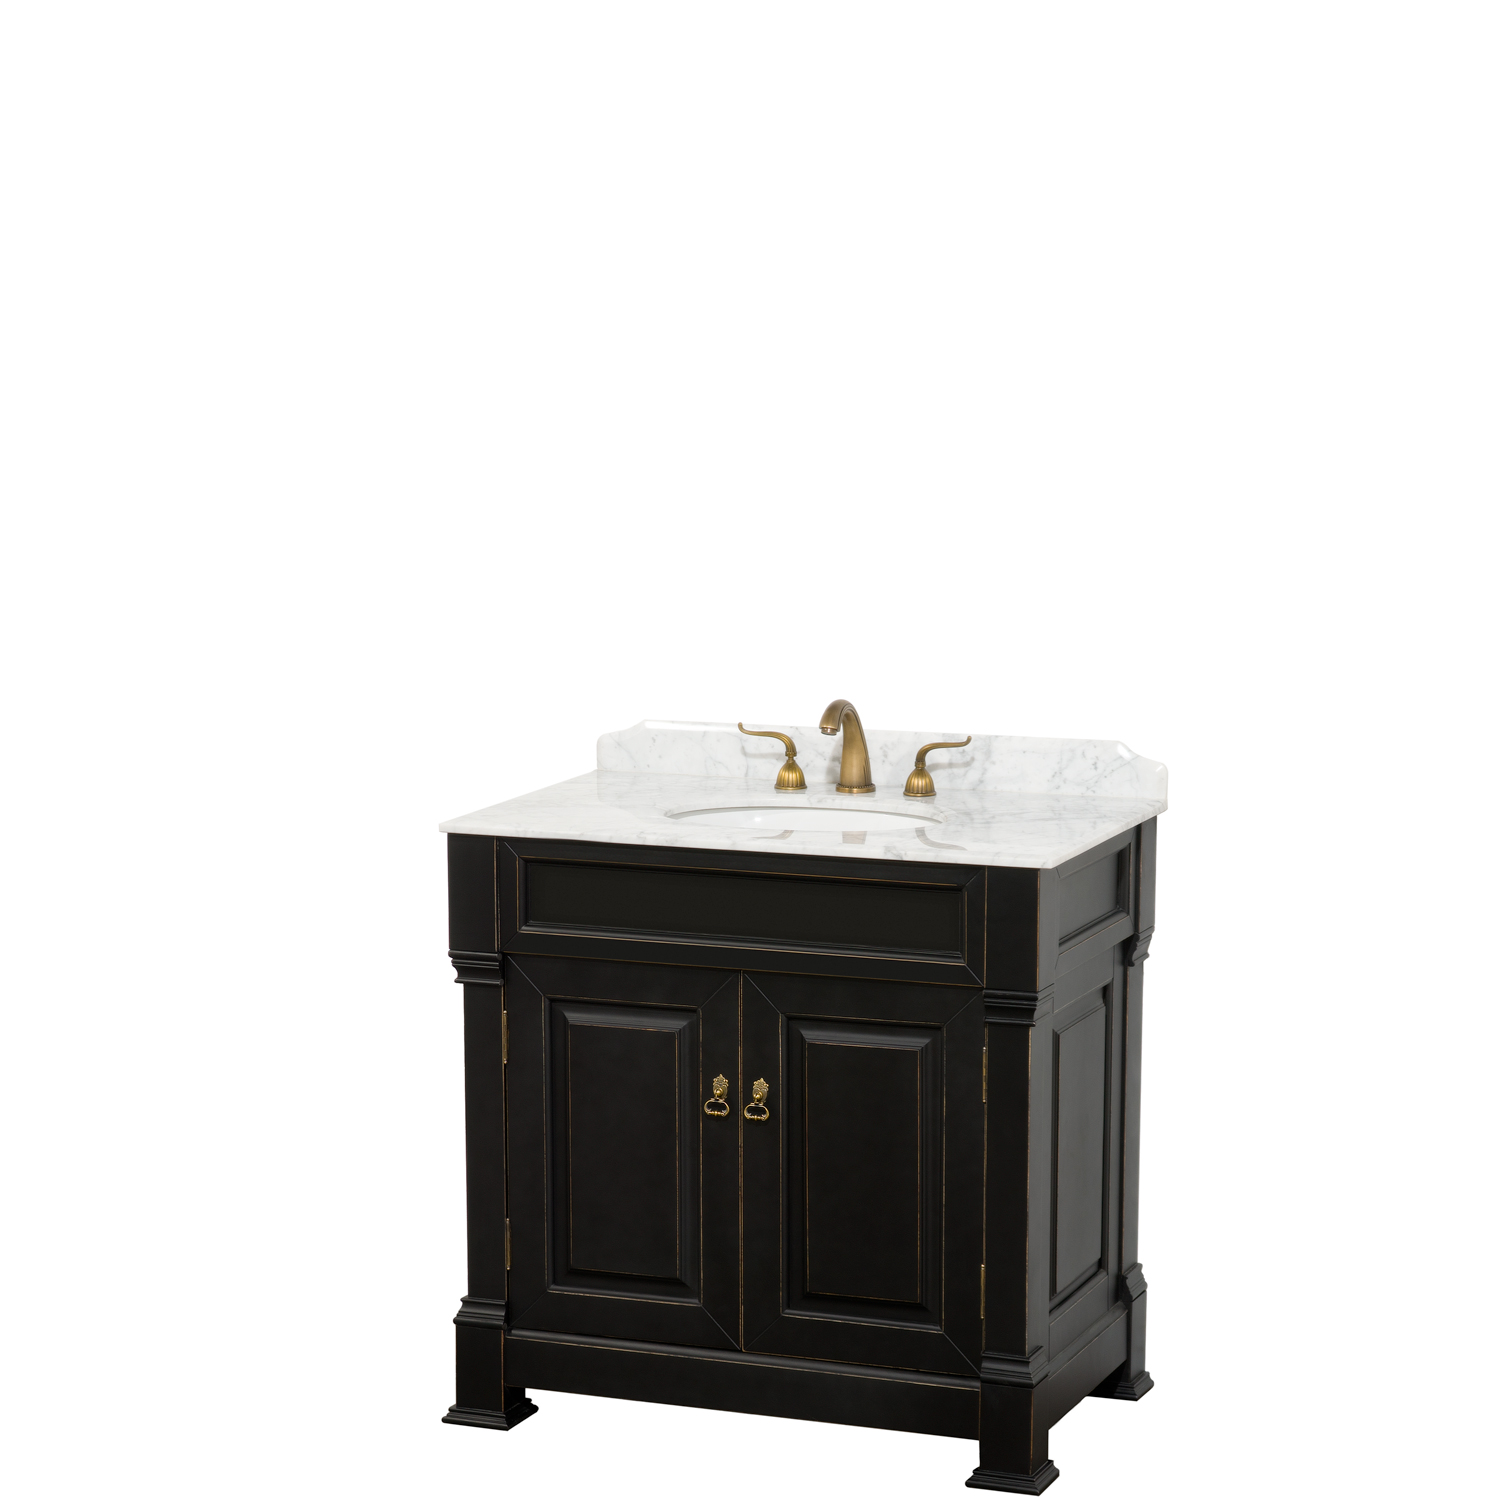 Andover 36 Traditional Bathroom Single, Black Bathroom Vanity With Sink 36